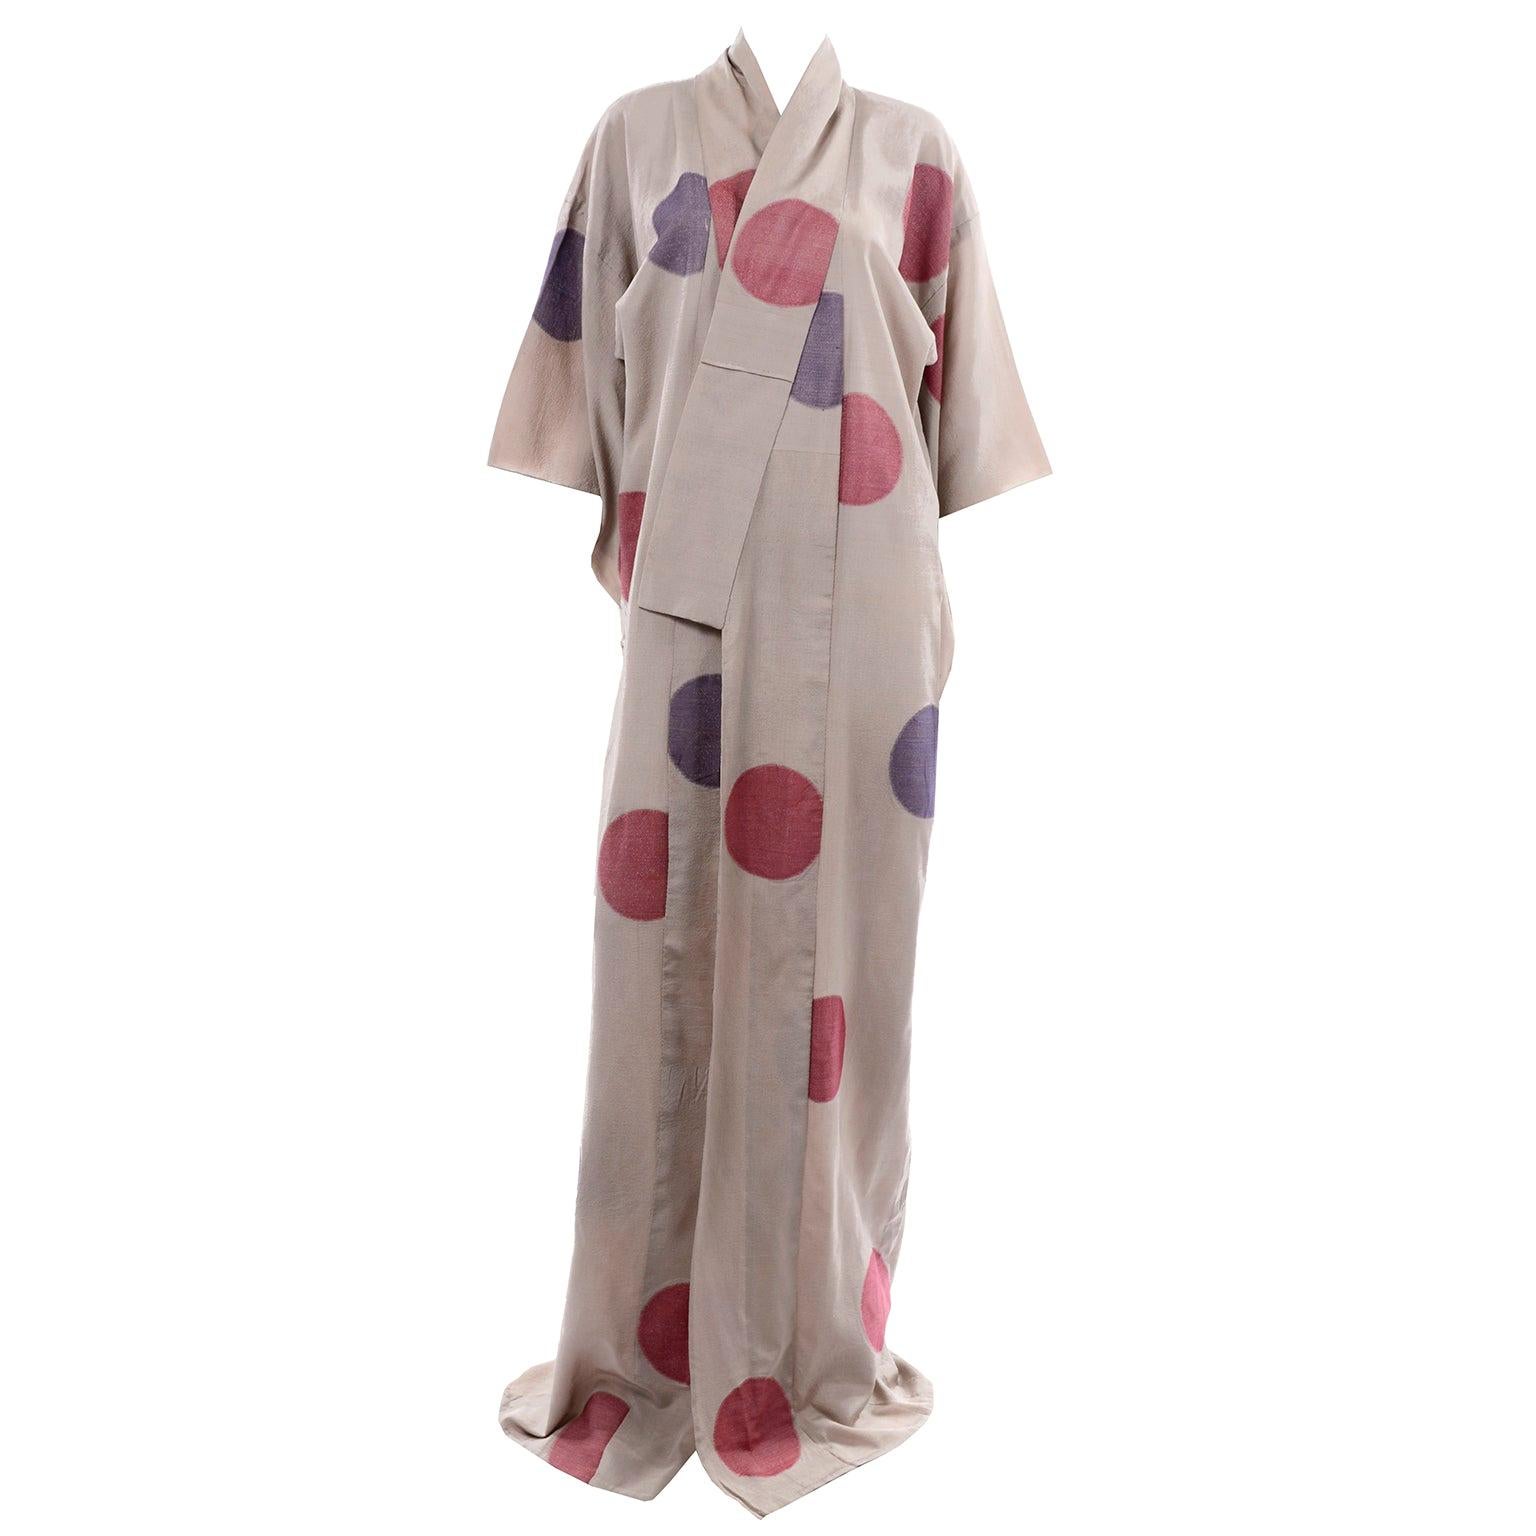 Kimono vintage brun clair avec ronds / pois lamé violets et rouges et doublure rose